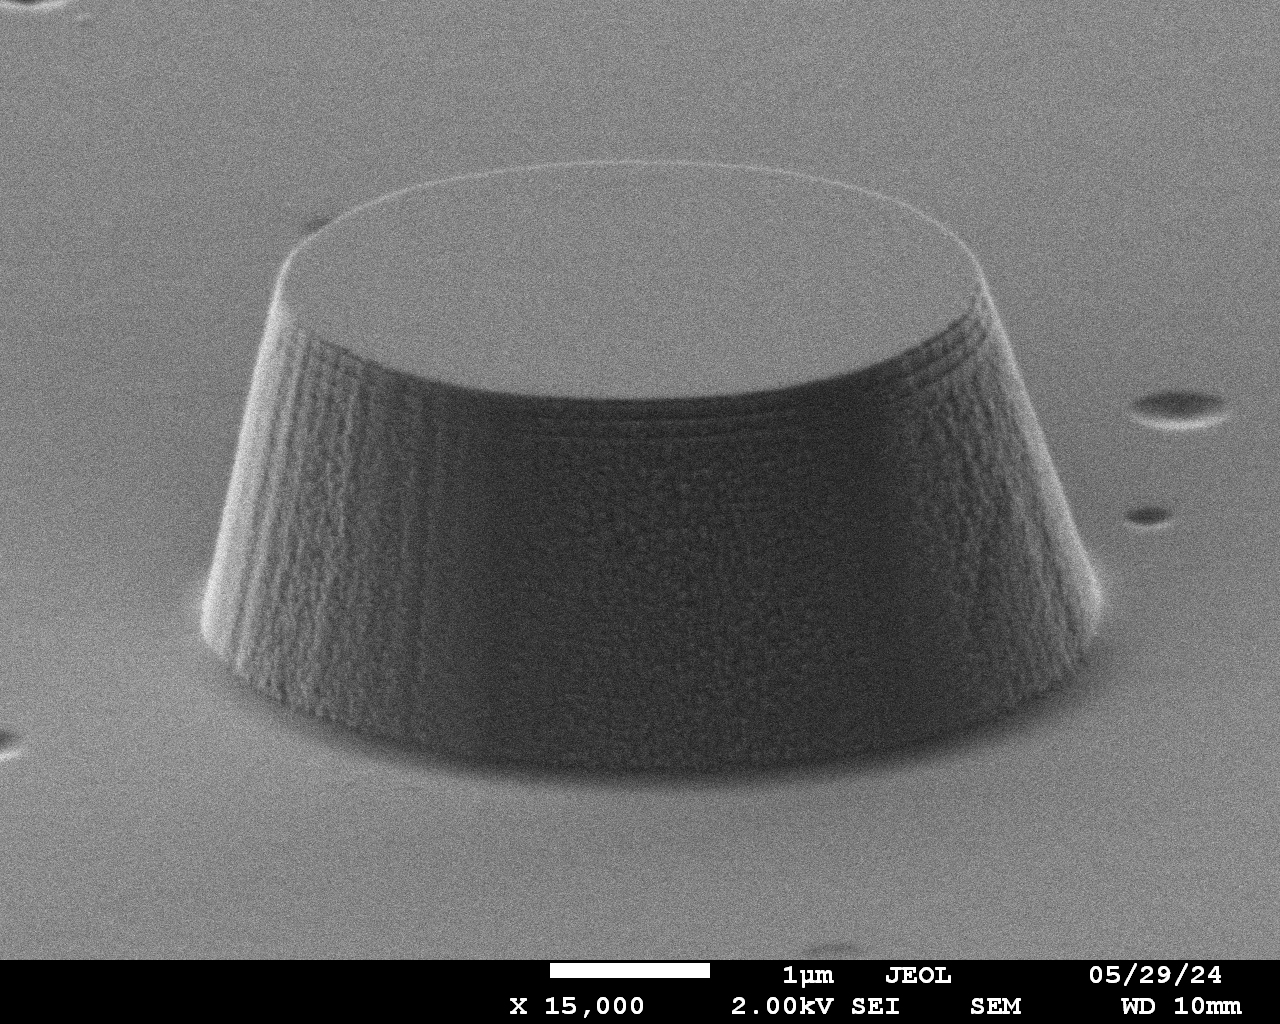 Изображение III-N микродиска диаметром 5 микрон, полученное с помощью сканирующего электронного микроскопа